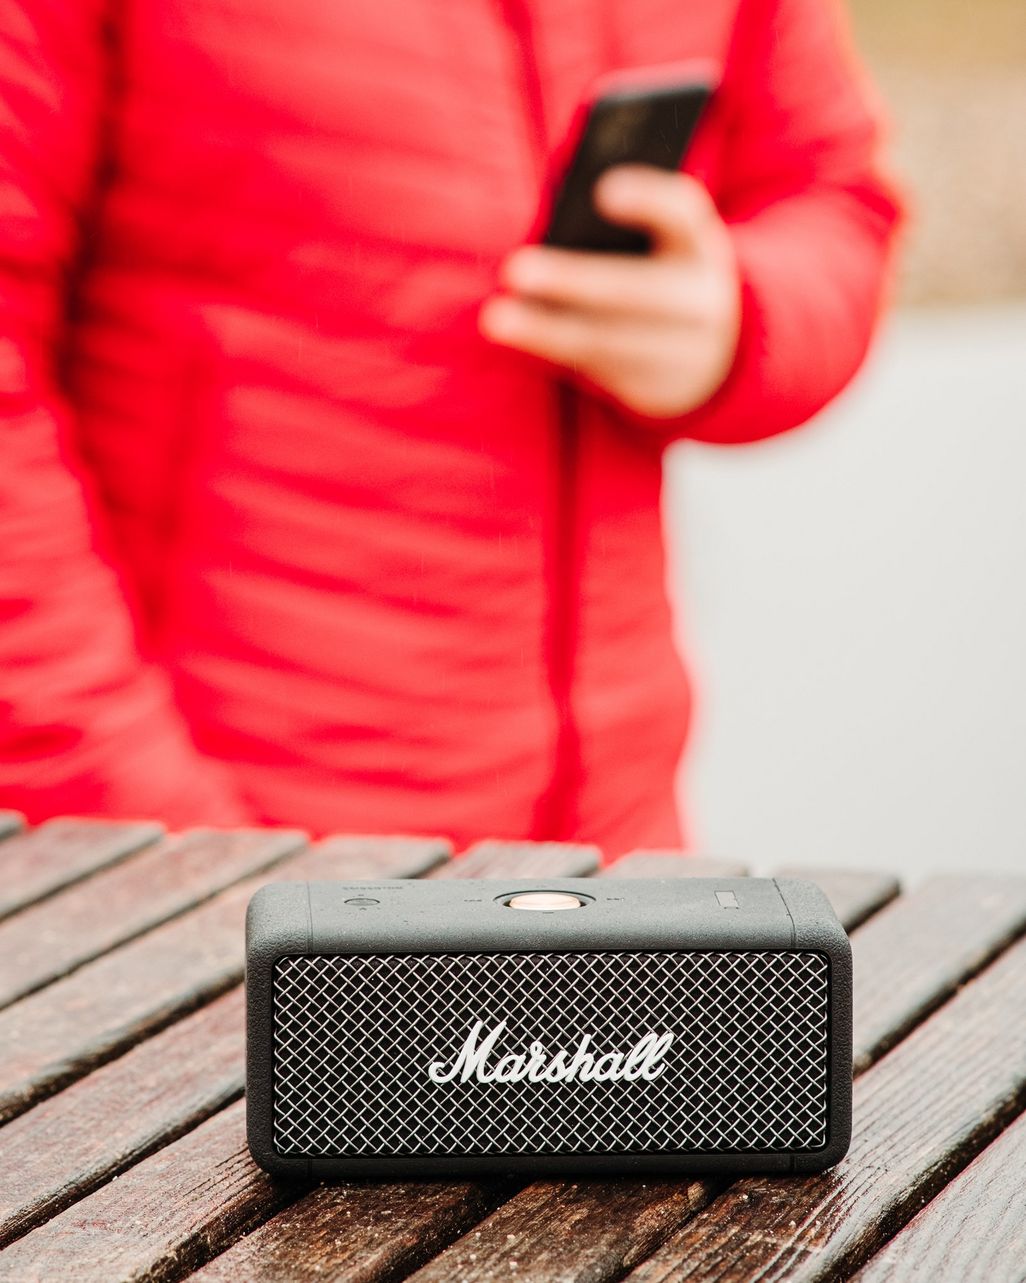 Der Bluetooth-Speaker „Emberton“ von Marshall. 